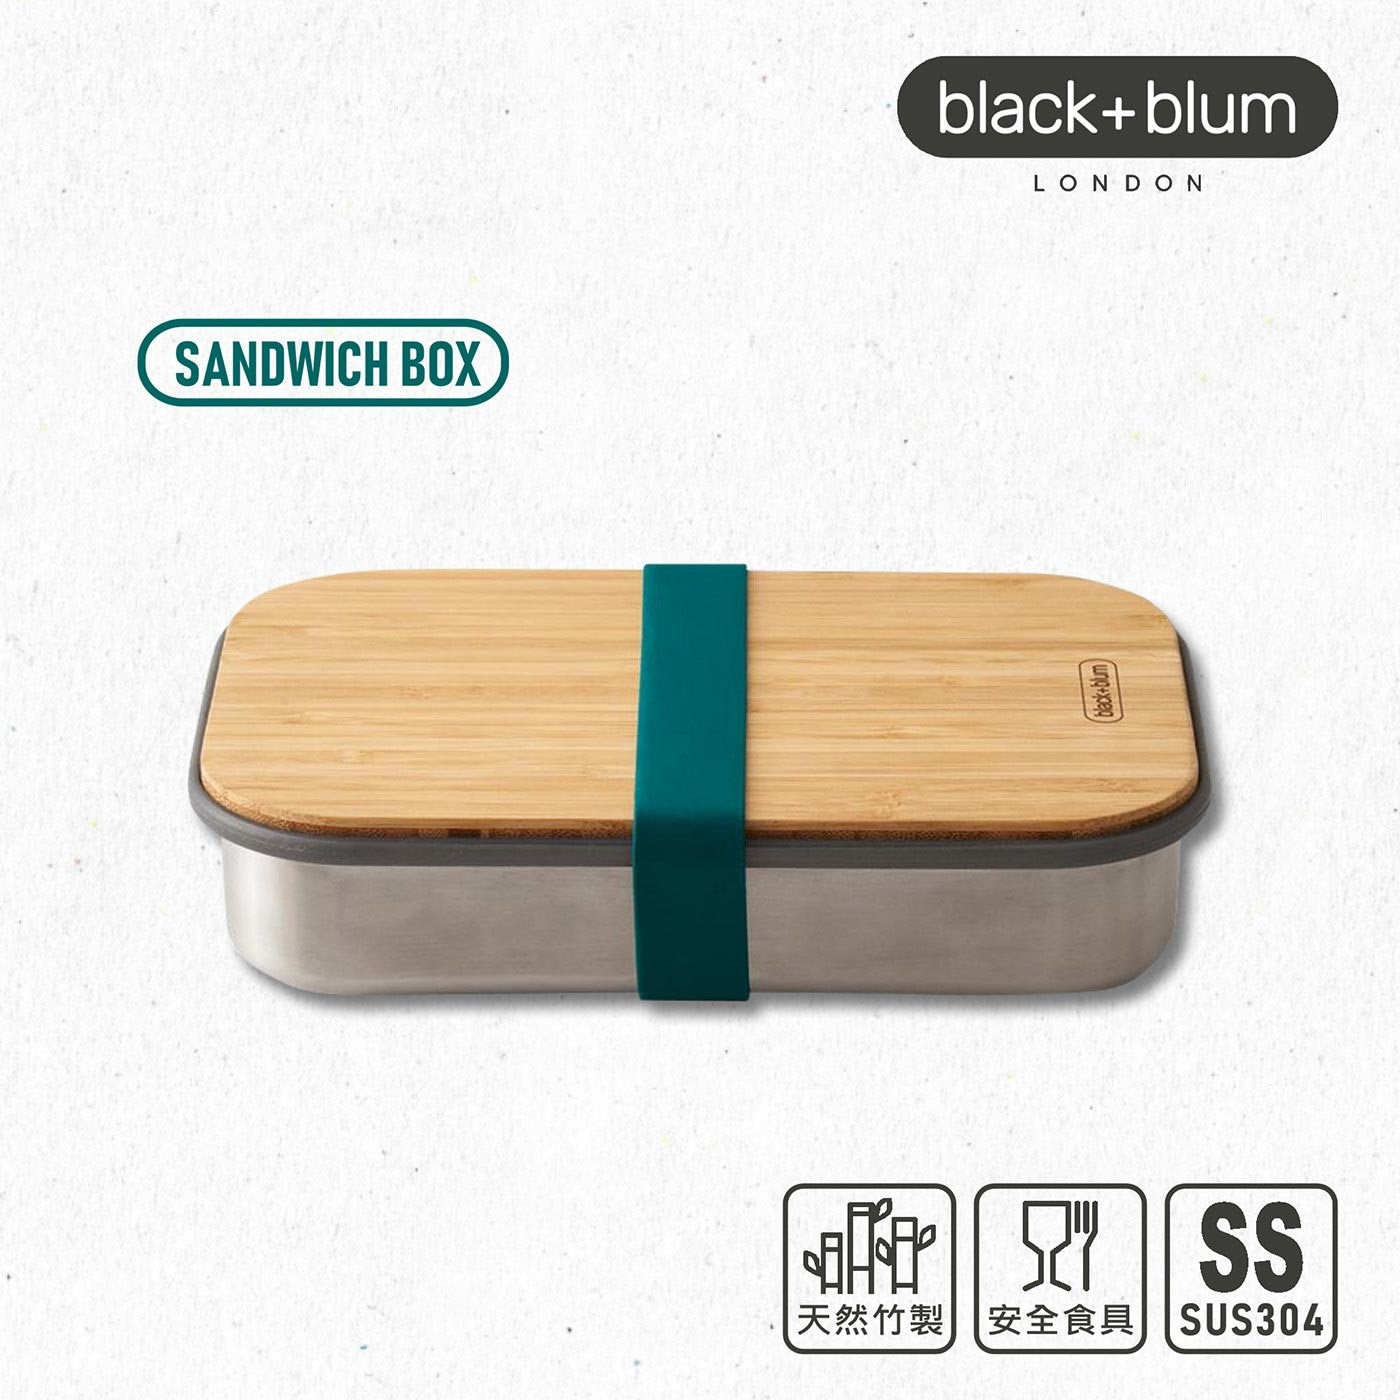 英國black+blum不鏽鋼輕食盒900毫升-海水藍，304不鏽鋼盒身、耐熱矽膠束帶邊條，高品質天然竹製上蓋，整體輕量化設計，針對土司三明治優化的盒身尺寸。